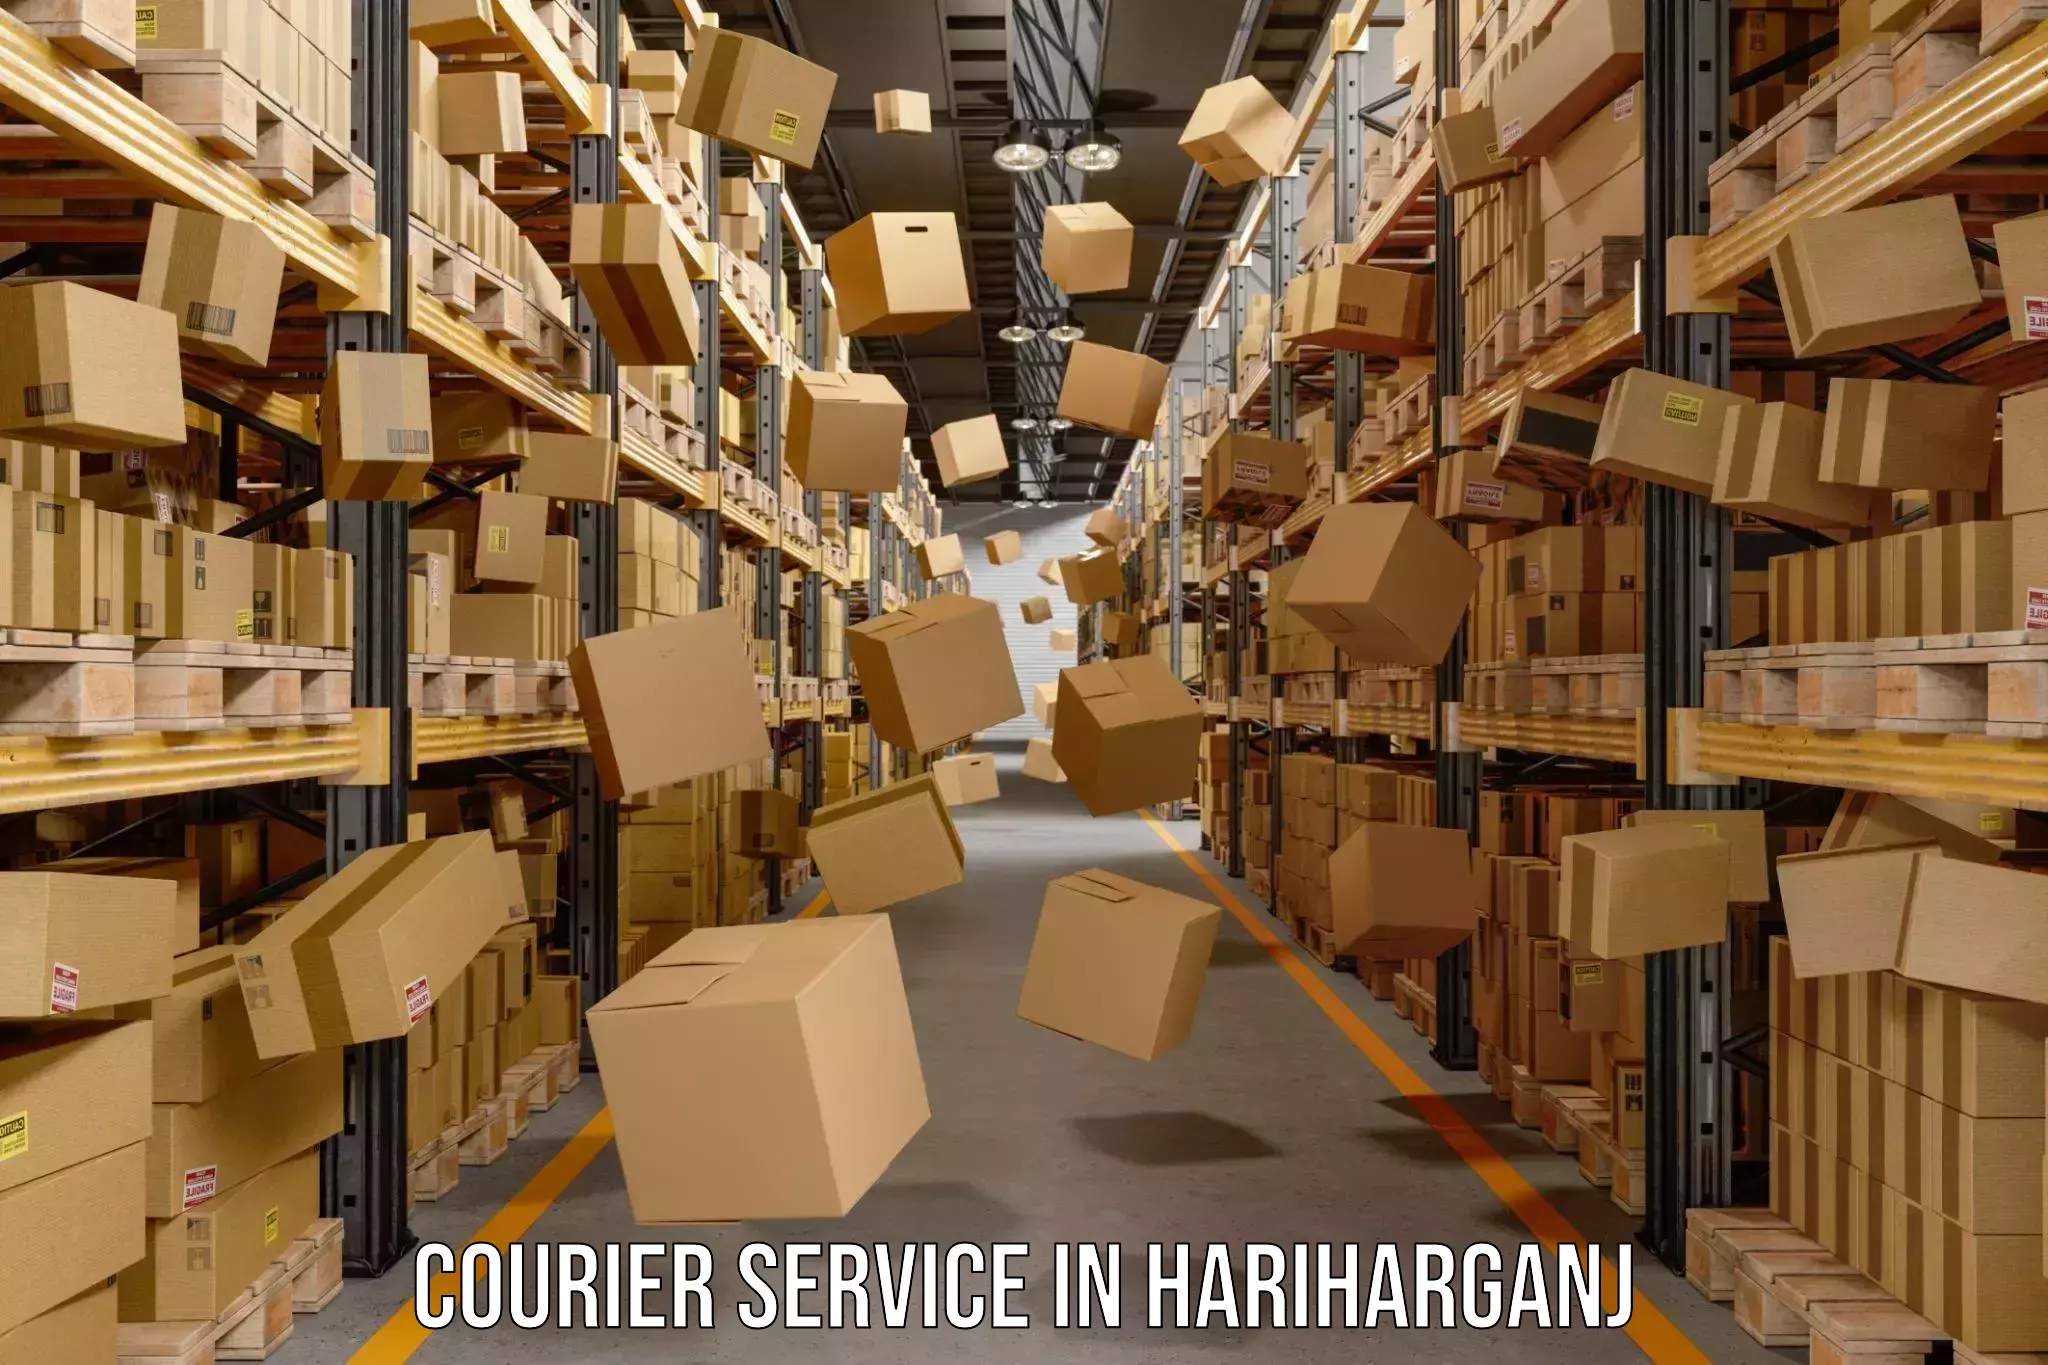 Versatile courier options in Hariharganj